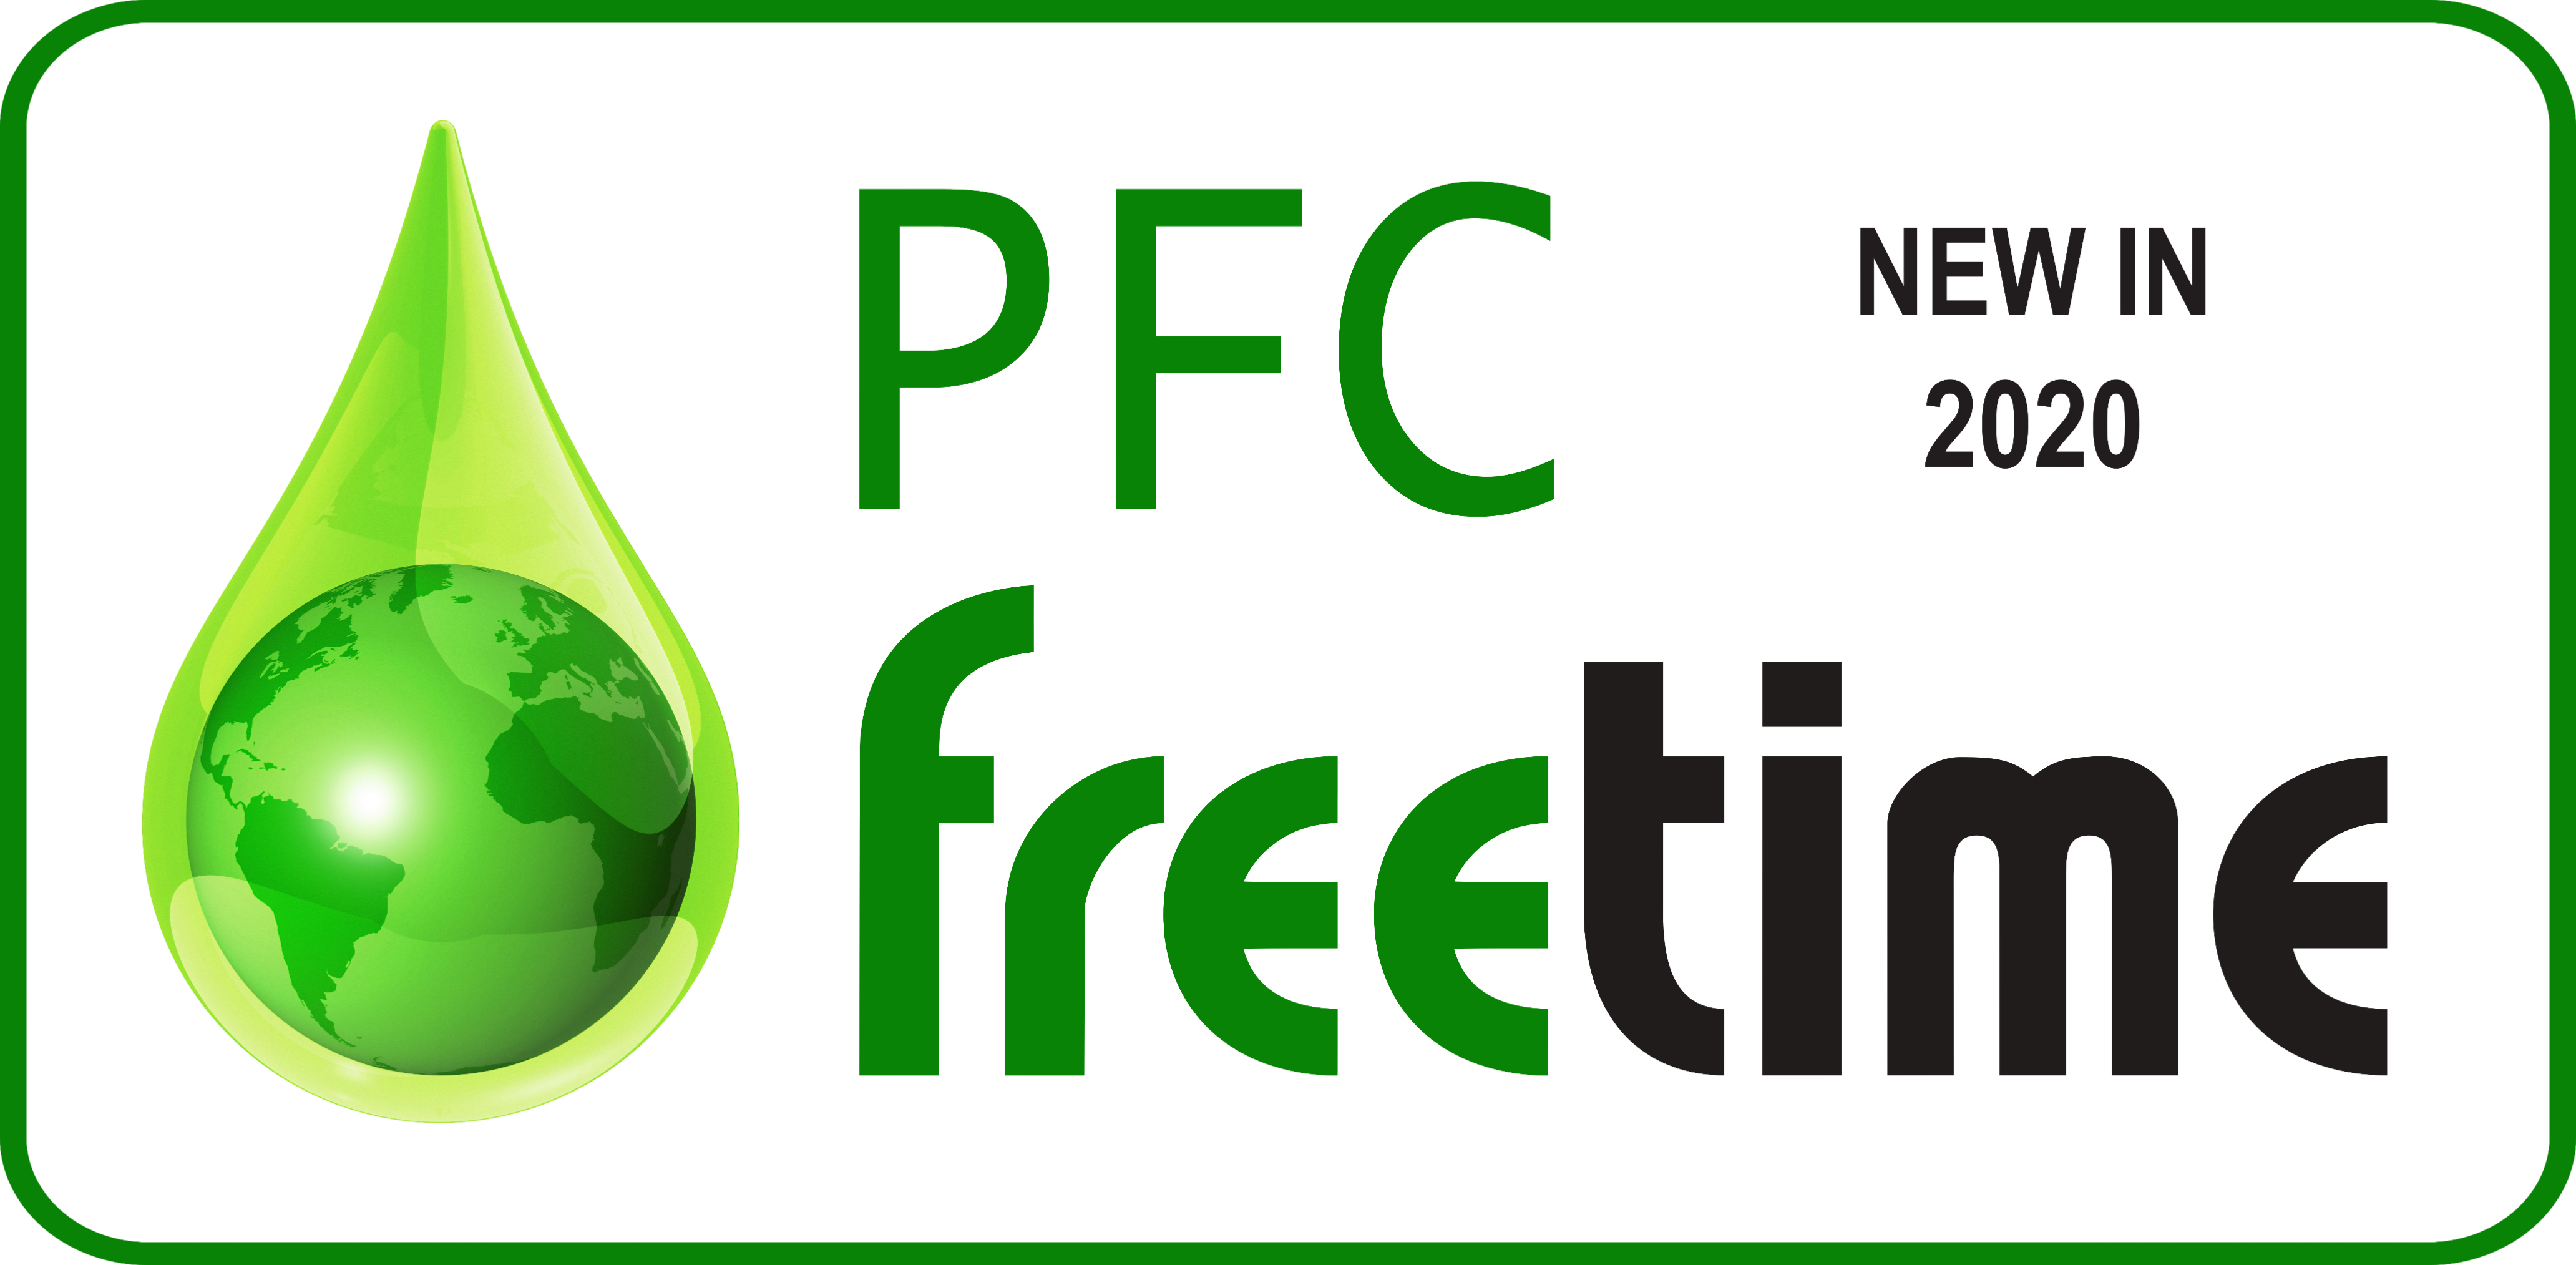 PFC Free - logo "PFC Freetime" showing Freetime turns PFC free in 2020